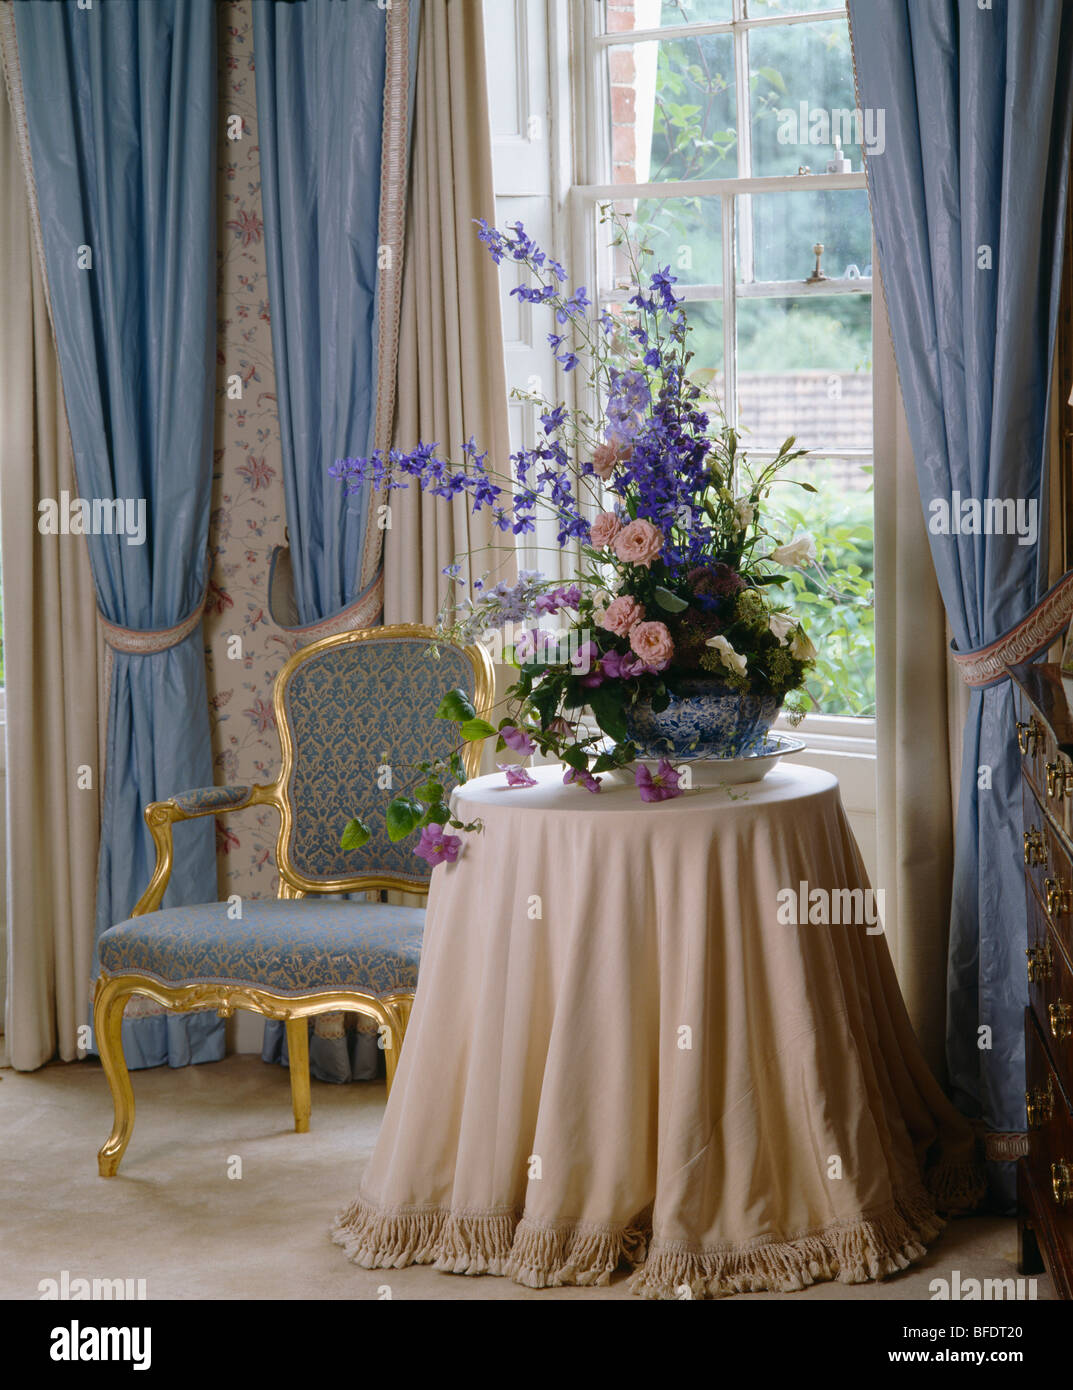 Composizioni floreali su tavola con crema di tessuto nella parte anteriore del vetro con tende blu Foto Stock